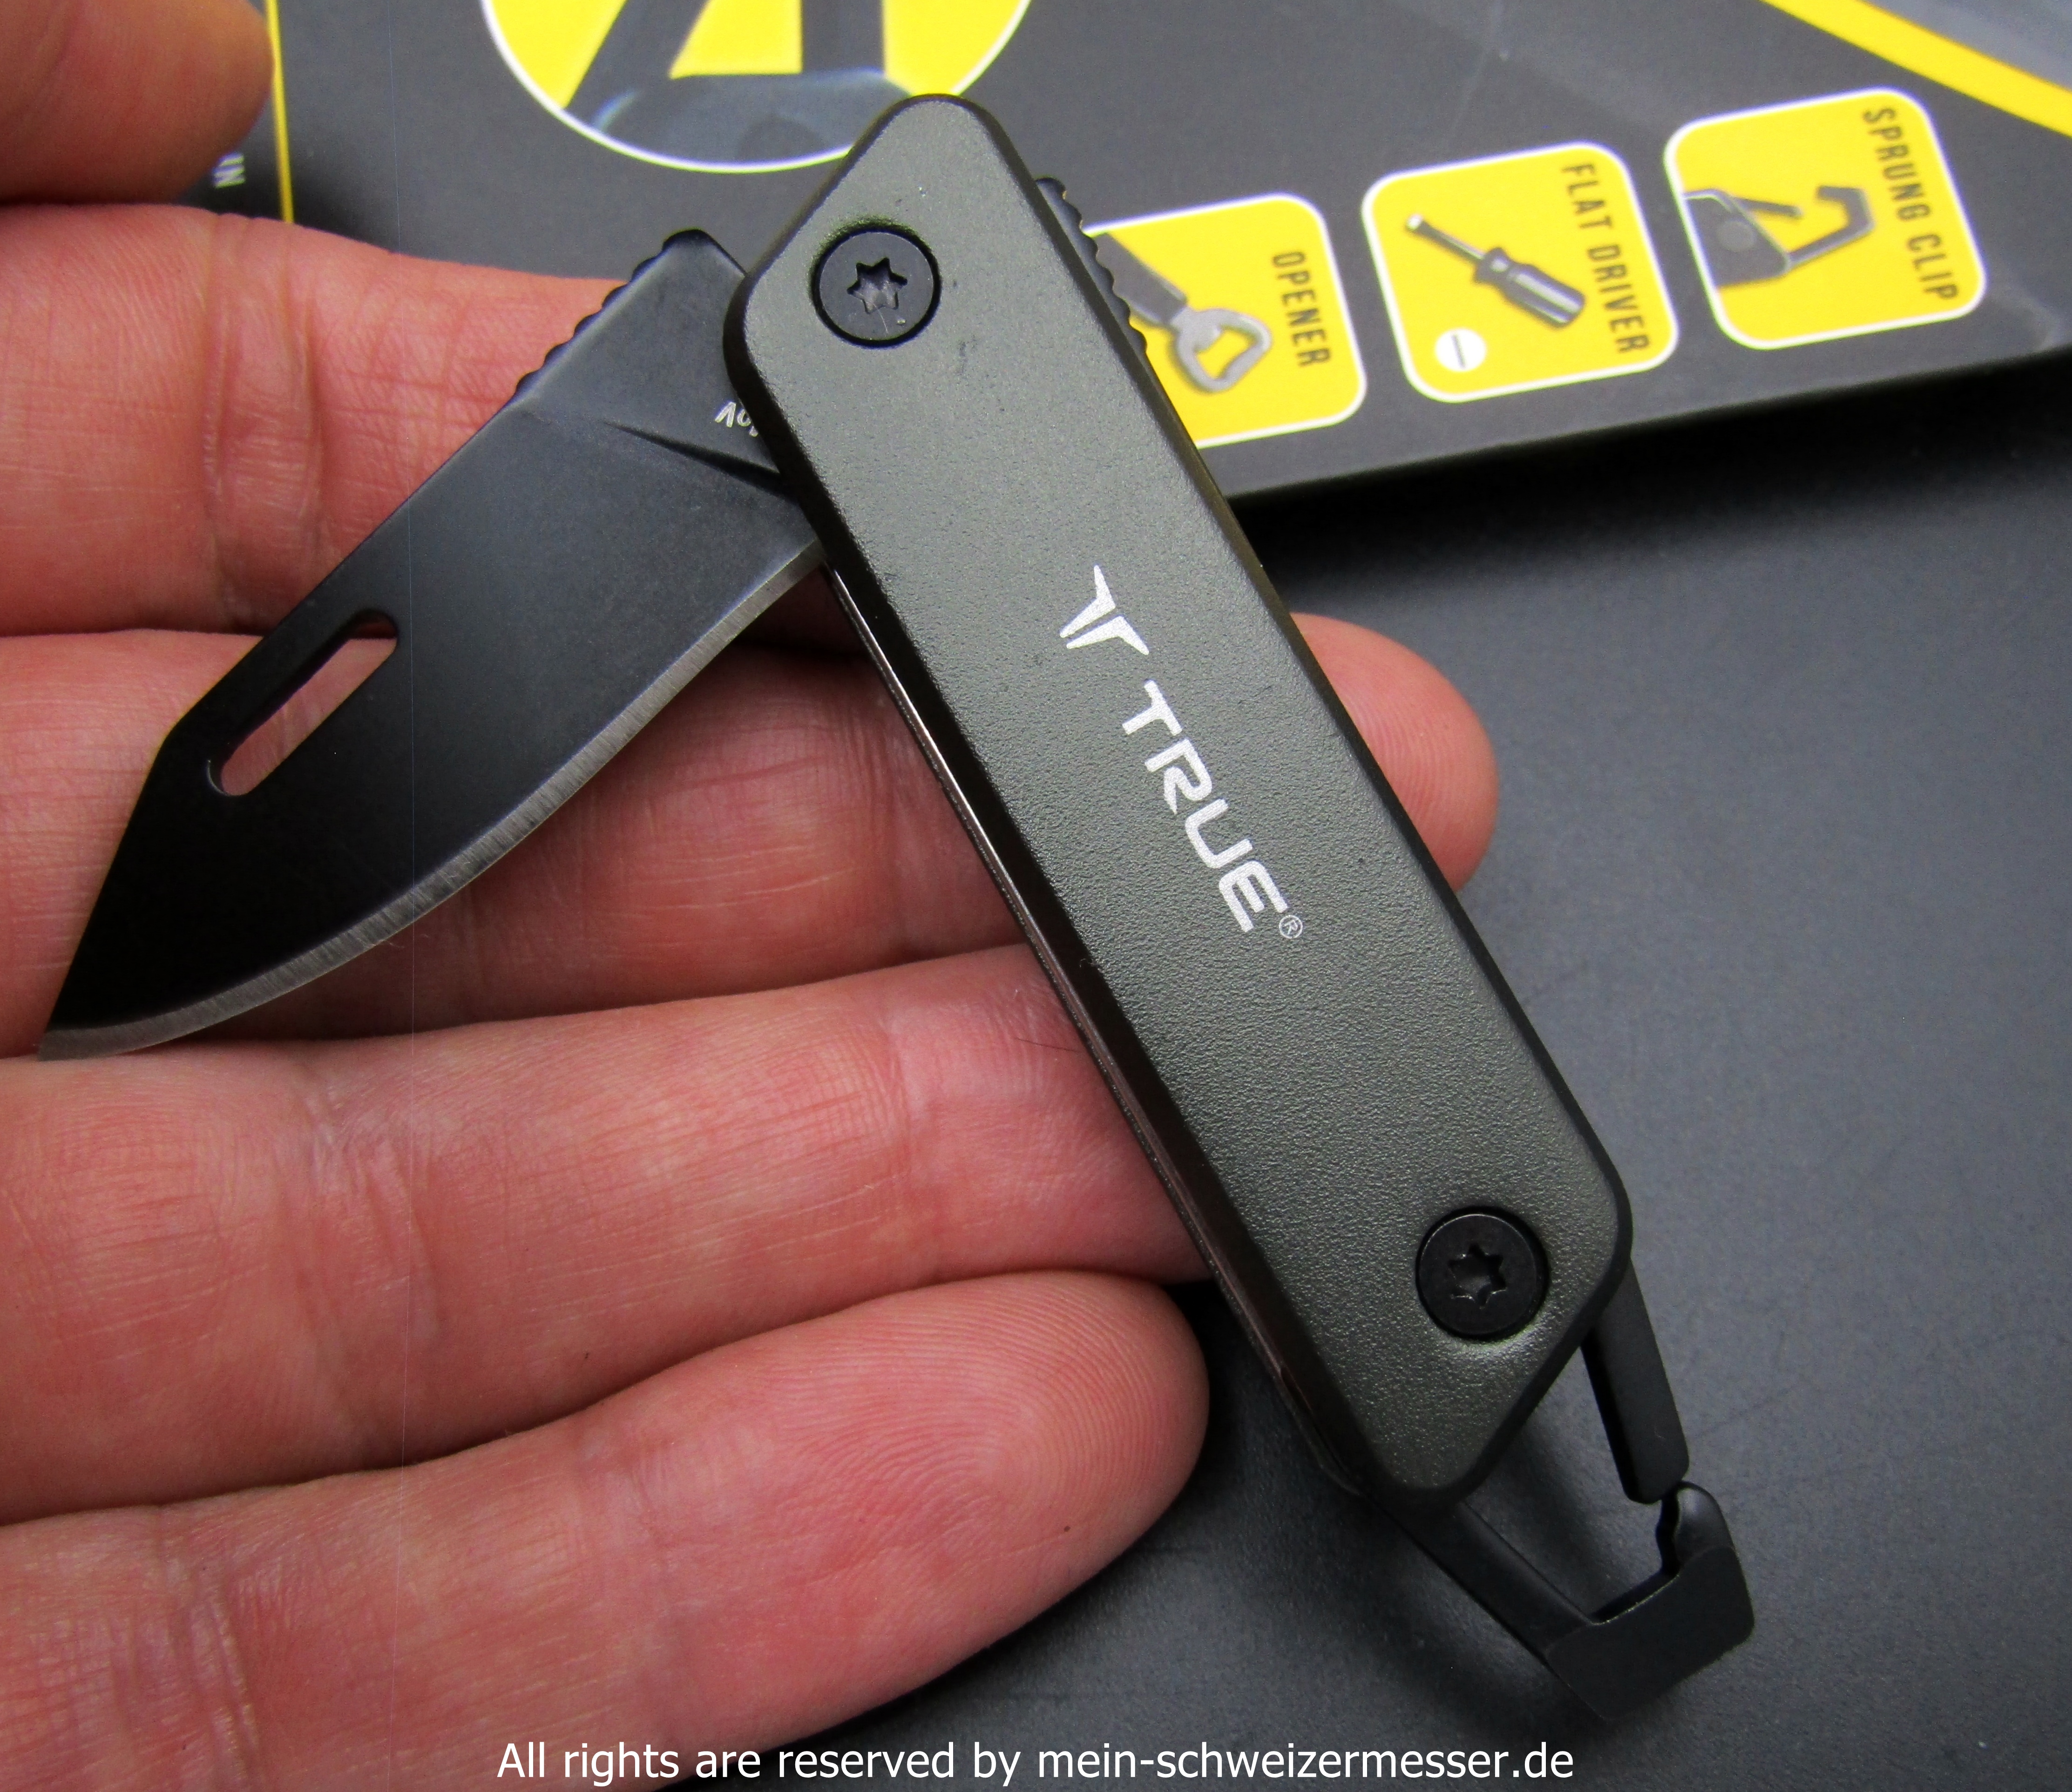 mein-schweizermesser - TRUE Utility keychain pocket knife, black